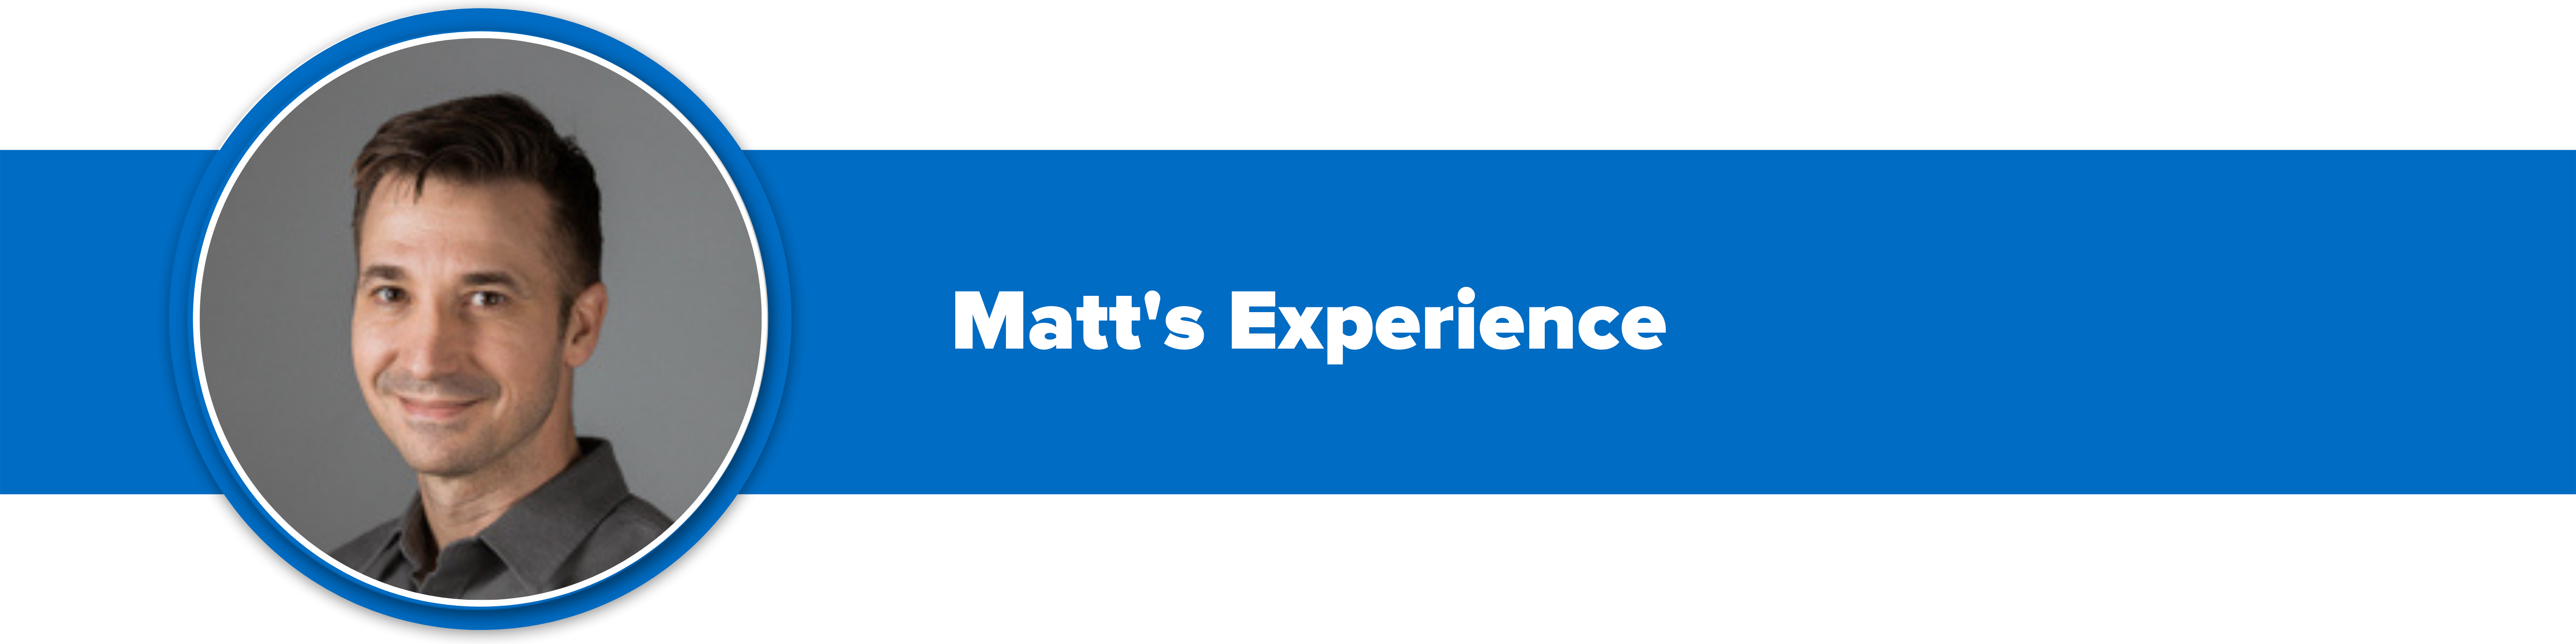 Header image with text "Matt's Experience" and a headshot of Matt Wheeler, Business Development Manager at Instrumart.